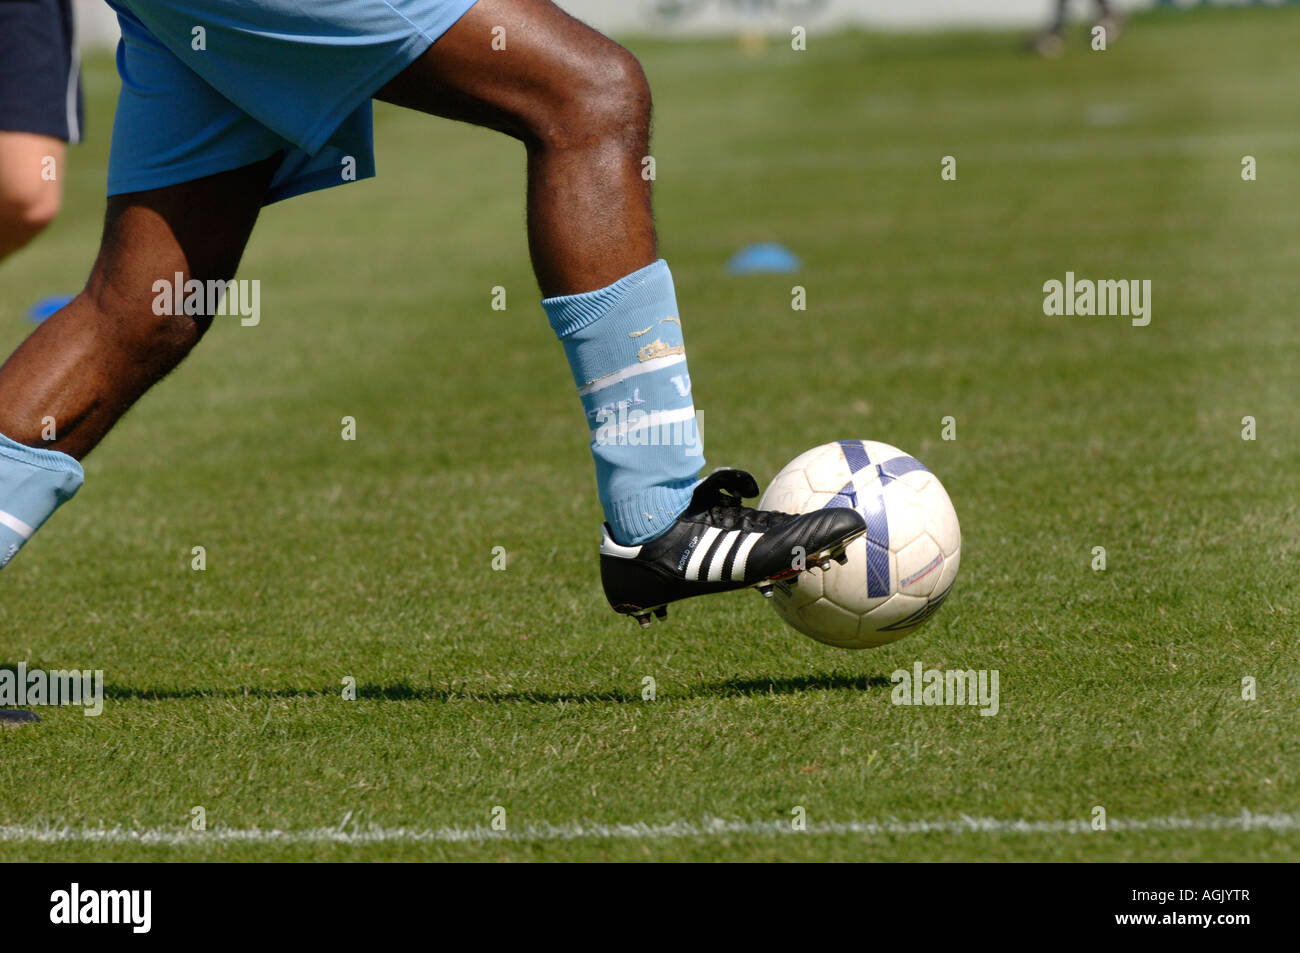 Ein Fußballspieler tritt einen Ball herum und wärmt sich vor einem Spiel auf. Stockfoto